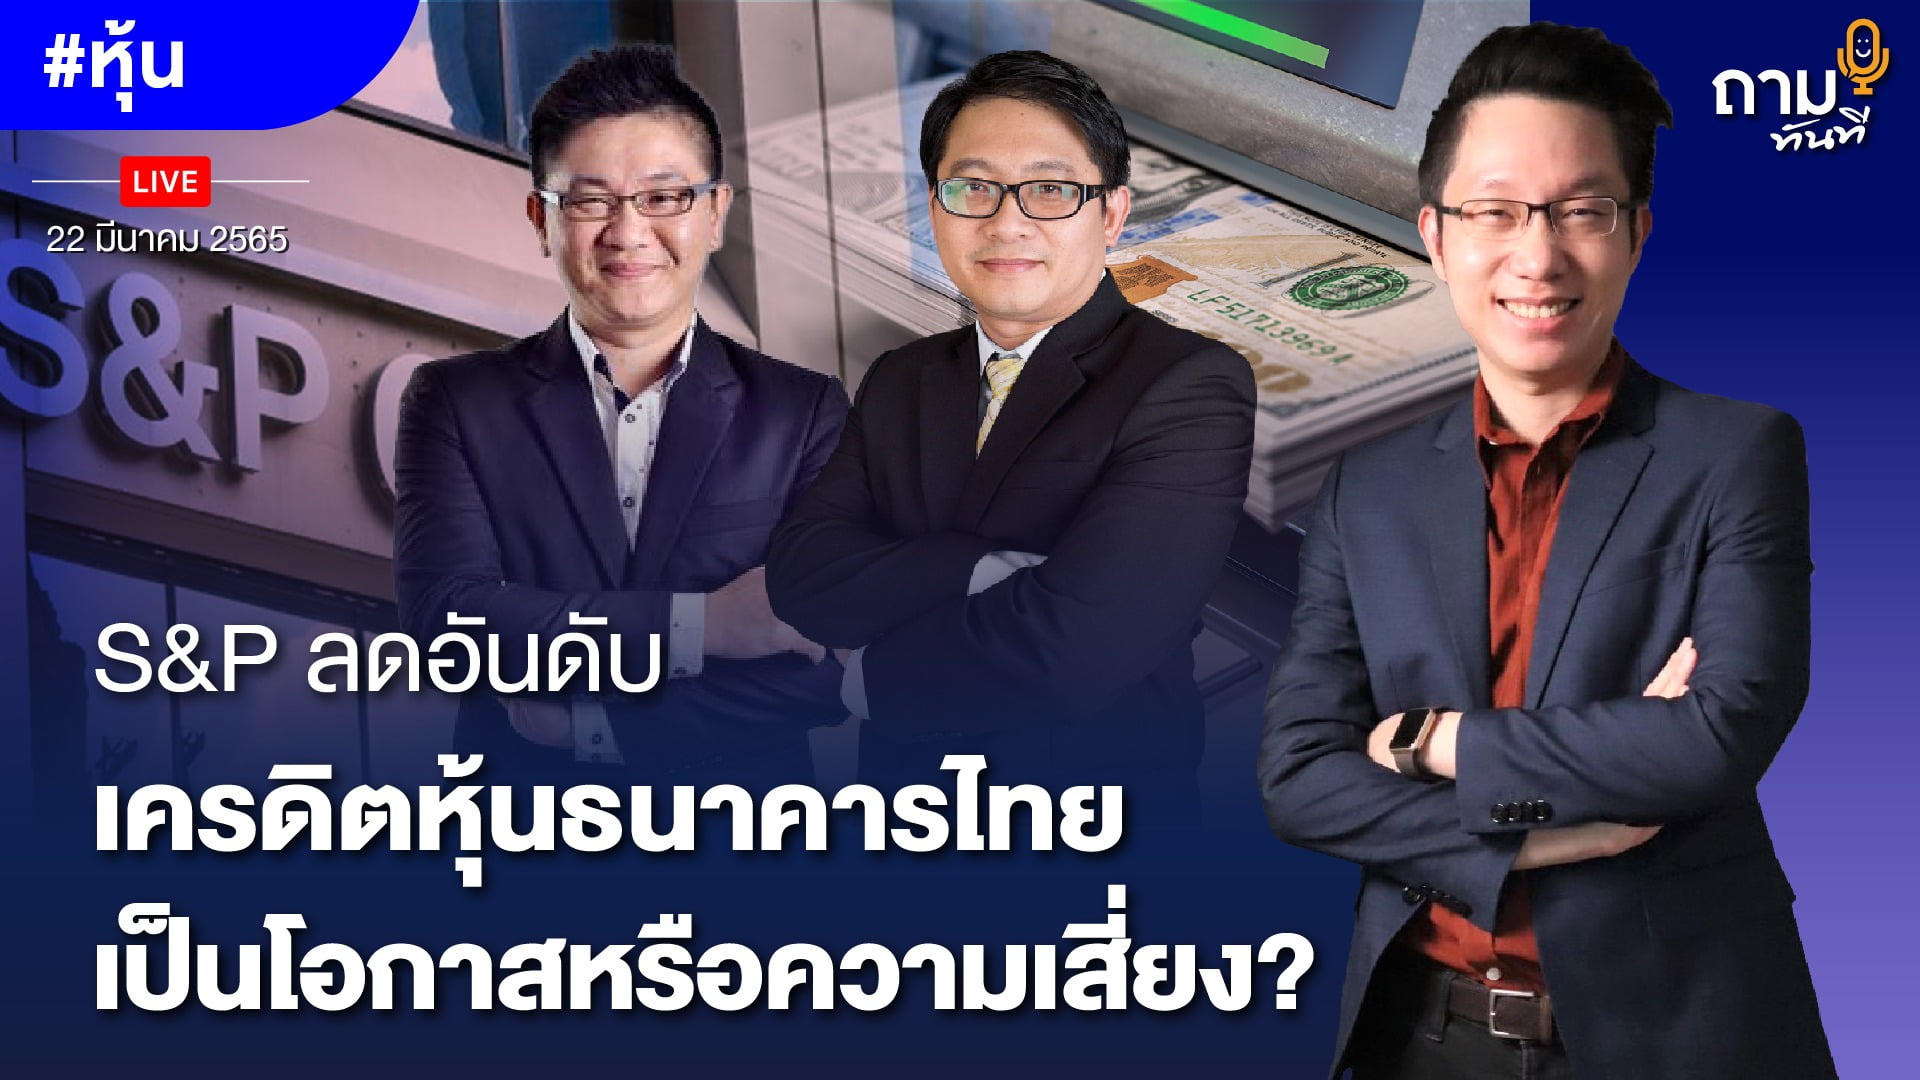 S&P ลดอันดับเครดิตหุ้นธนาคารไทย เป็นโอกาสหรือความเสี่ยง